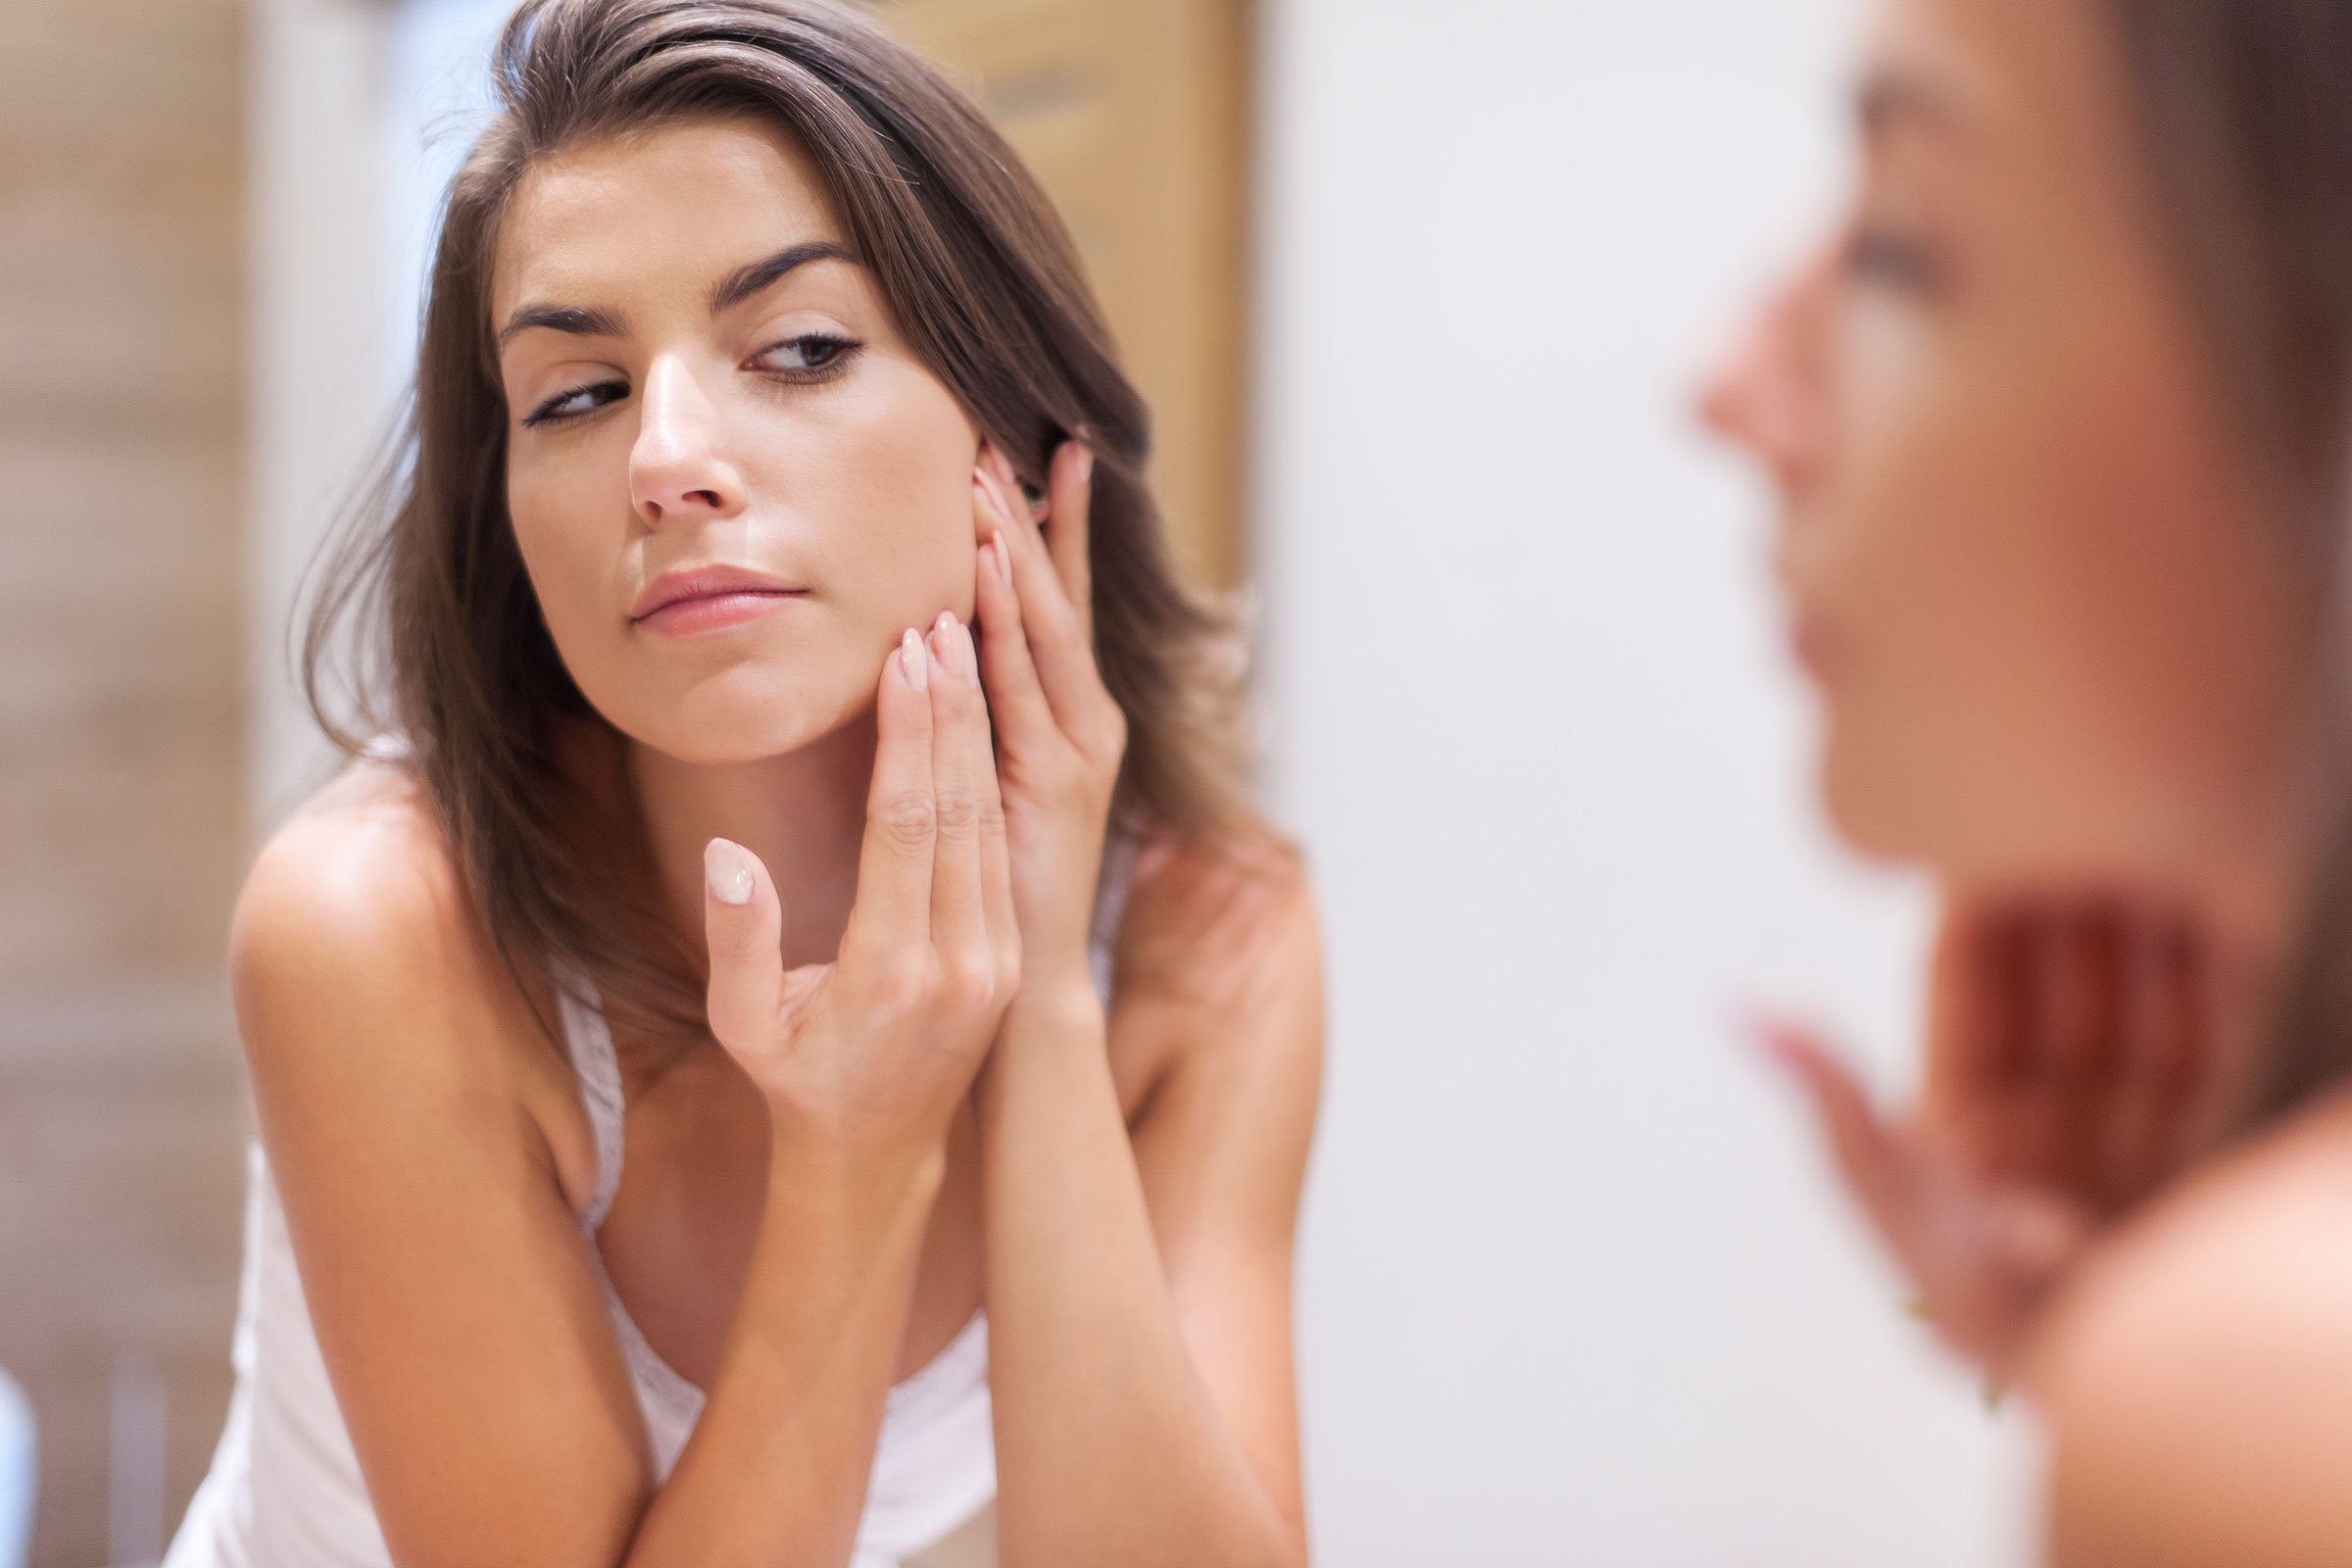 Jak pielęgnować suchą skórę? Najlepsze kosmetyki, skuteczne triki i najczęściej popełniane błędy